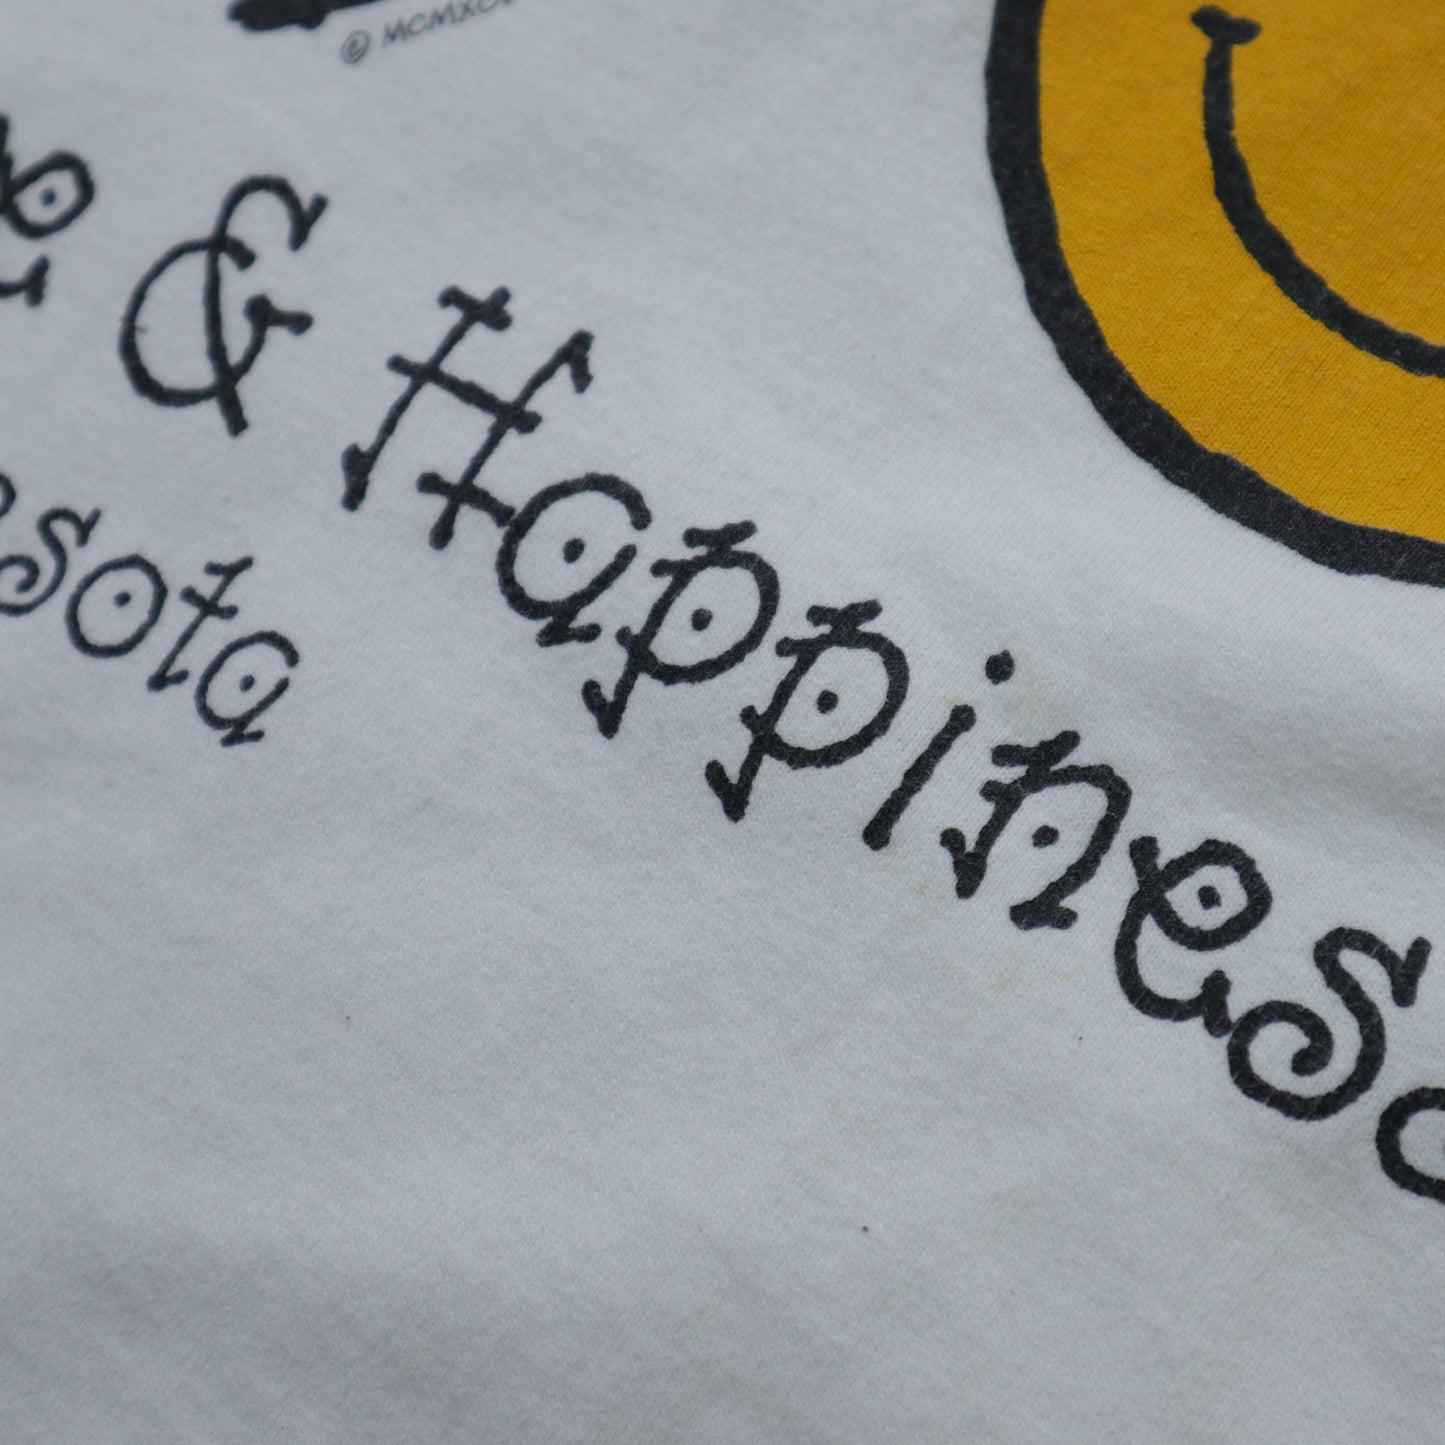 90年代 アメリカ製 Peace Love Happiness Tシャツ